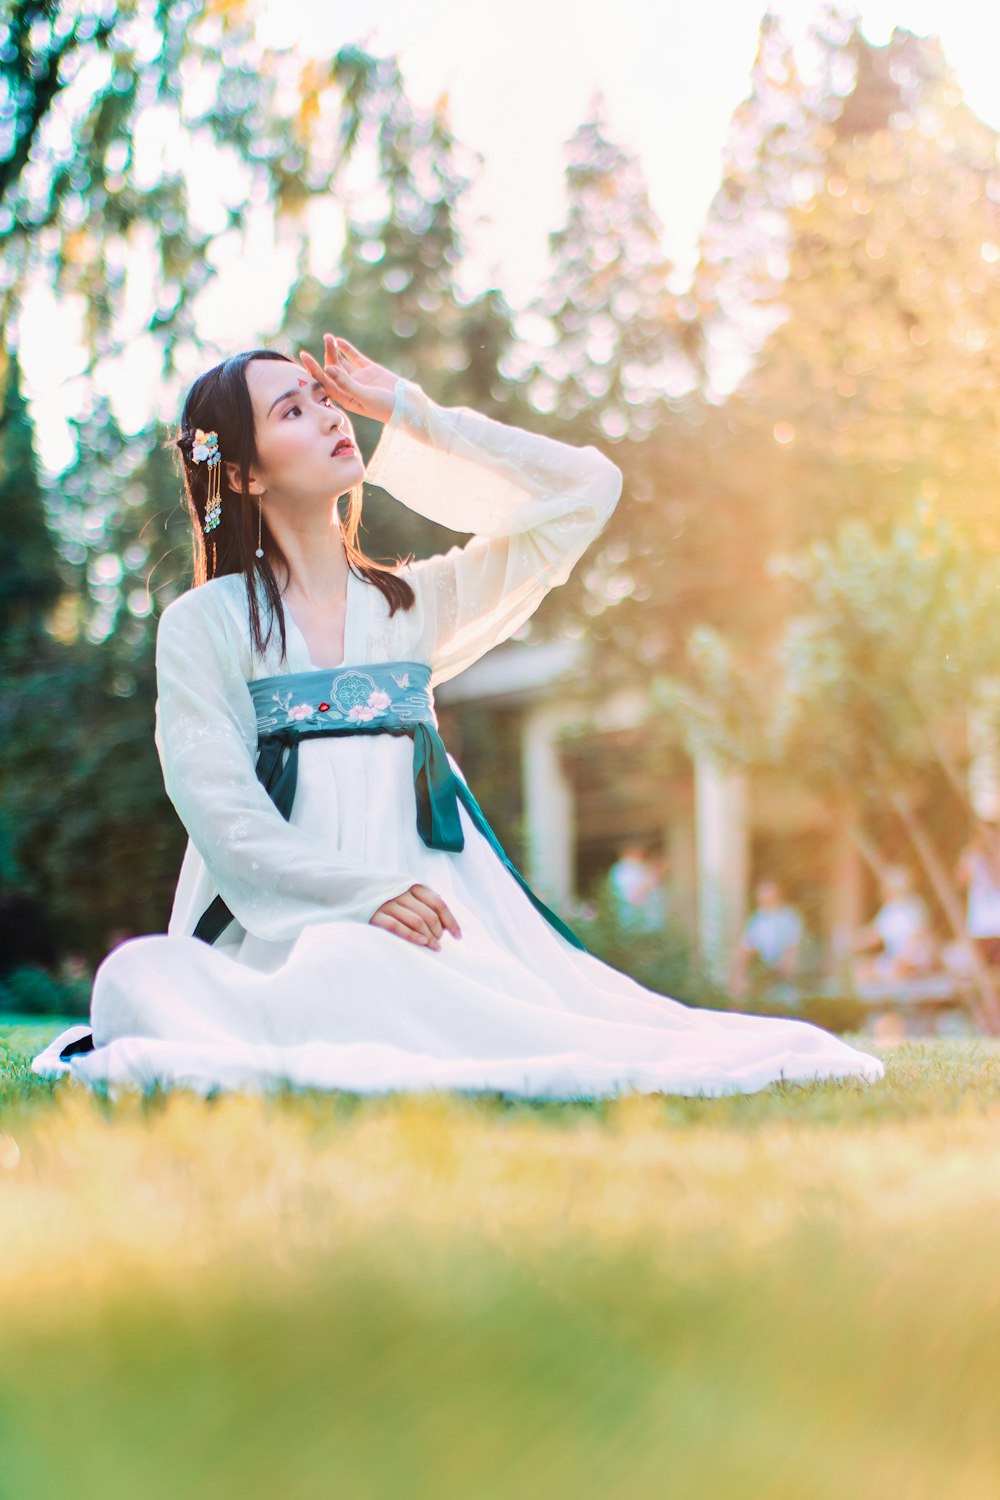 woman wearing white and blue hakama sitting on grassland